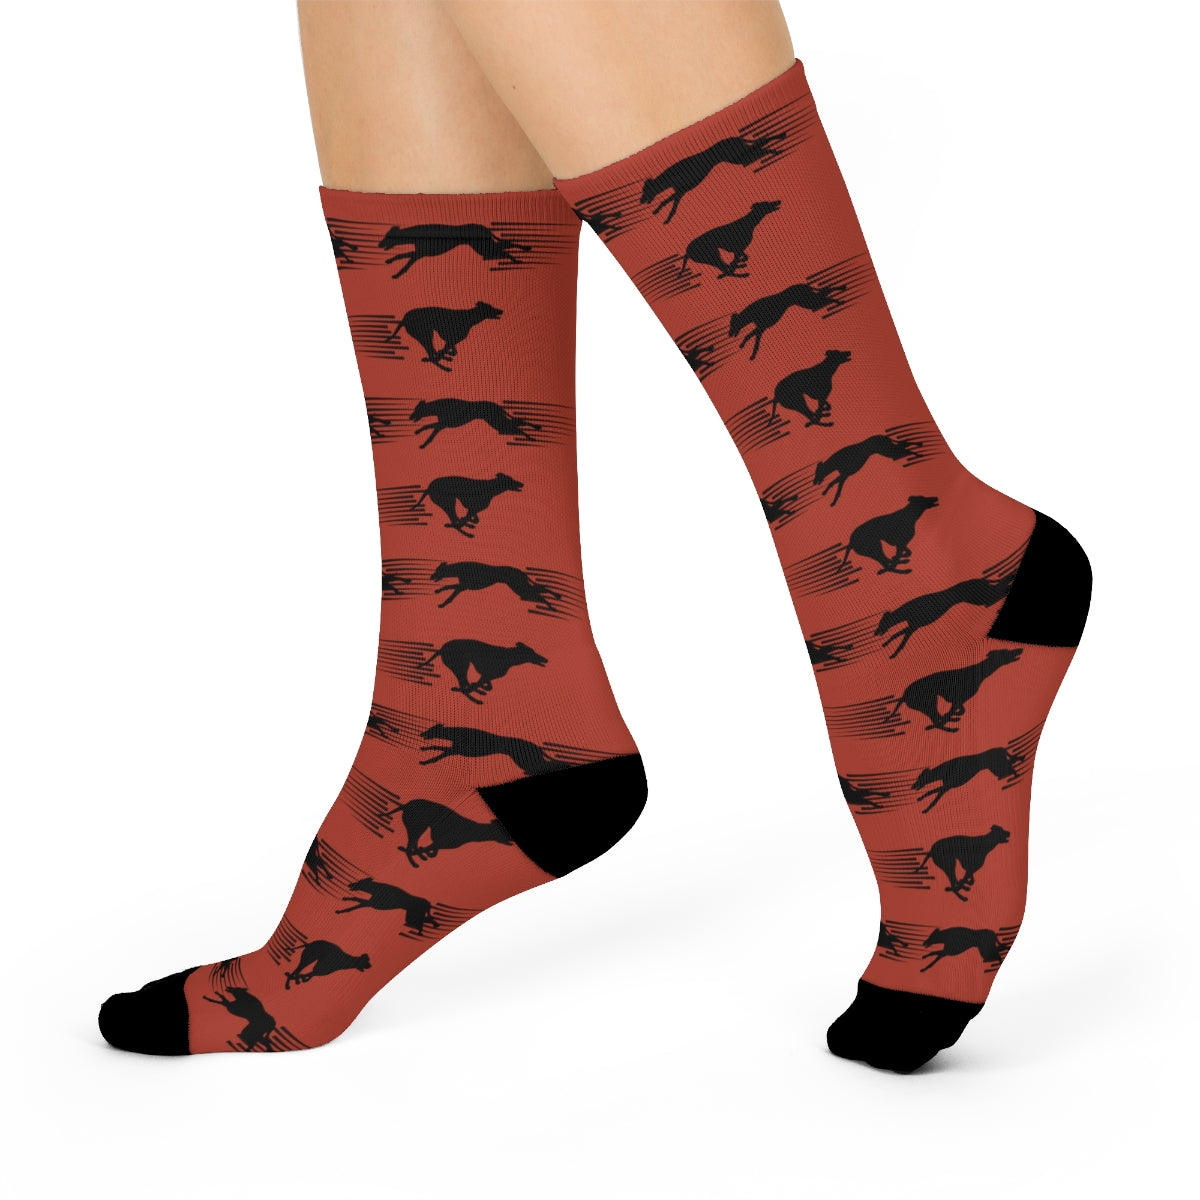 Greyhound, IG, Whippet Socks, Orange, Trendy, Men's and Women's - The Dapper Dogg